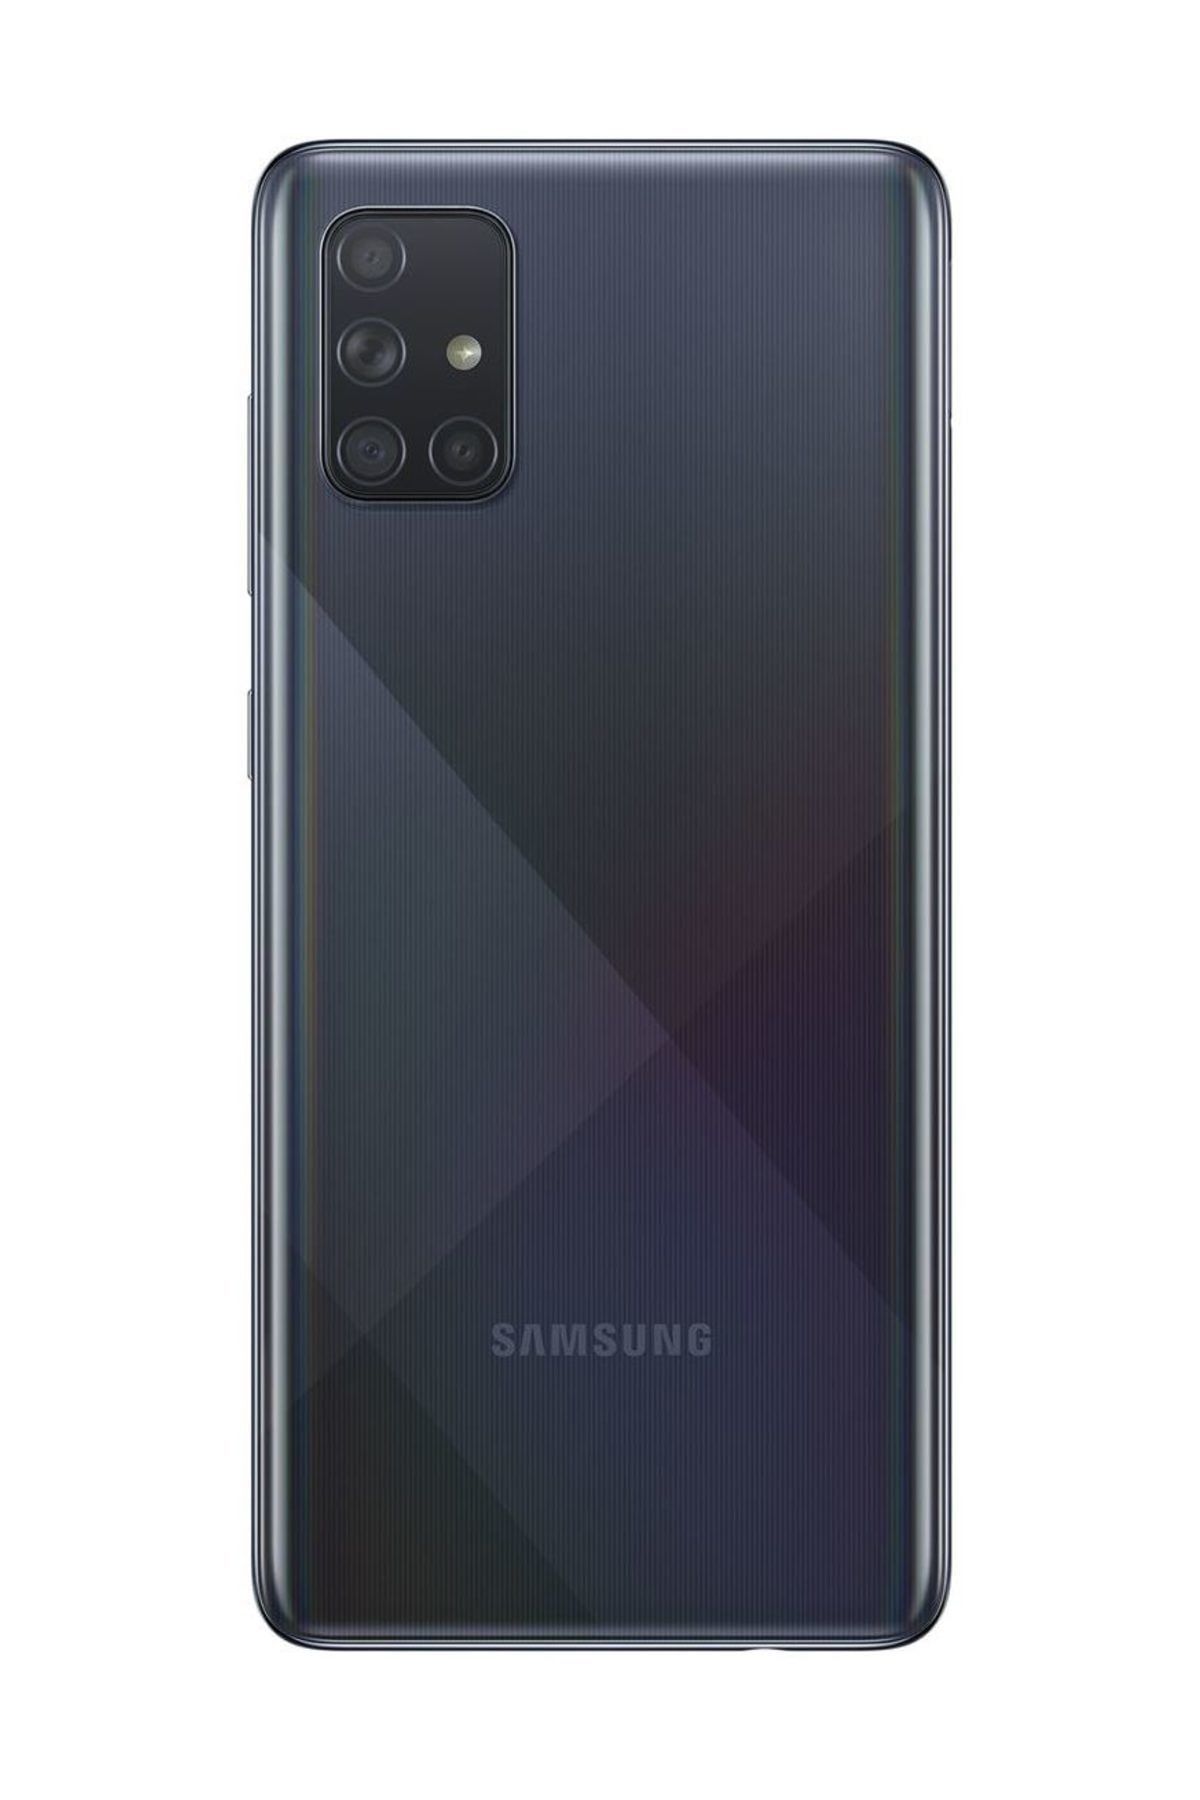 Samsung galaxy a71 128. Samsung Galaxy a71. Samsung Galaxy a71 128 ГБ. Samsung Galaxy a71 6/128gb. Samsung Galaxy a71 2020.